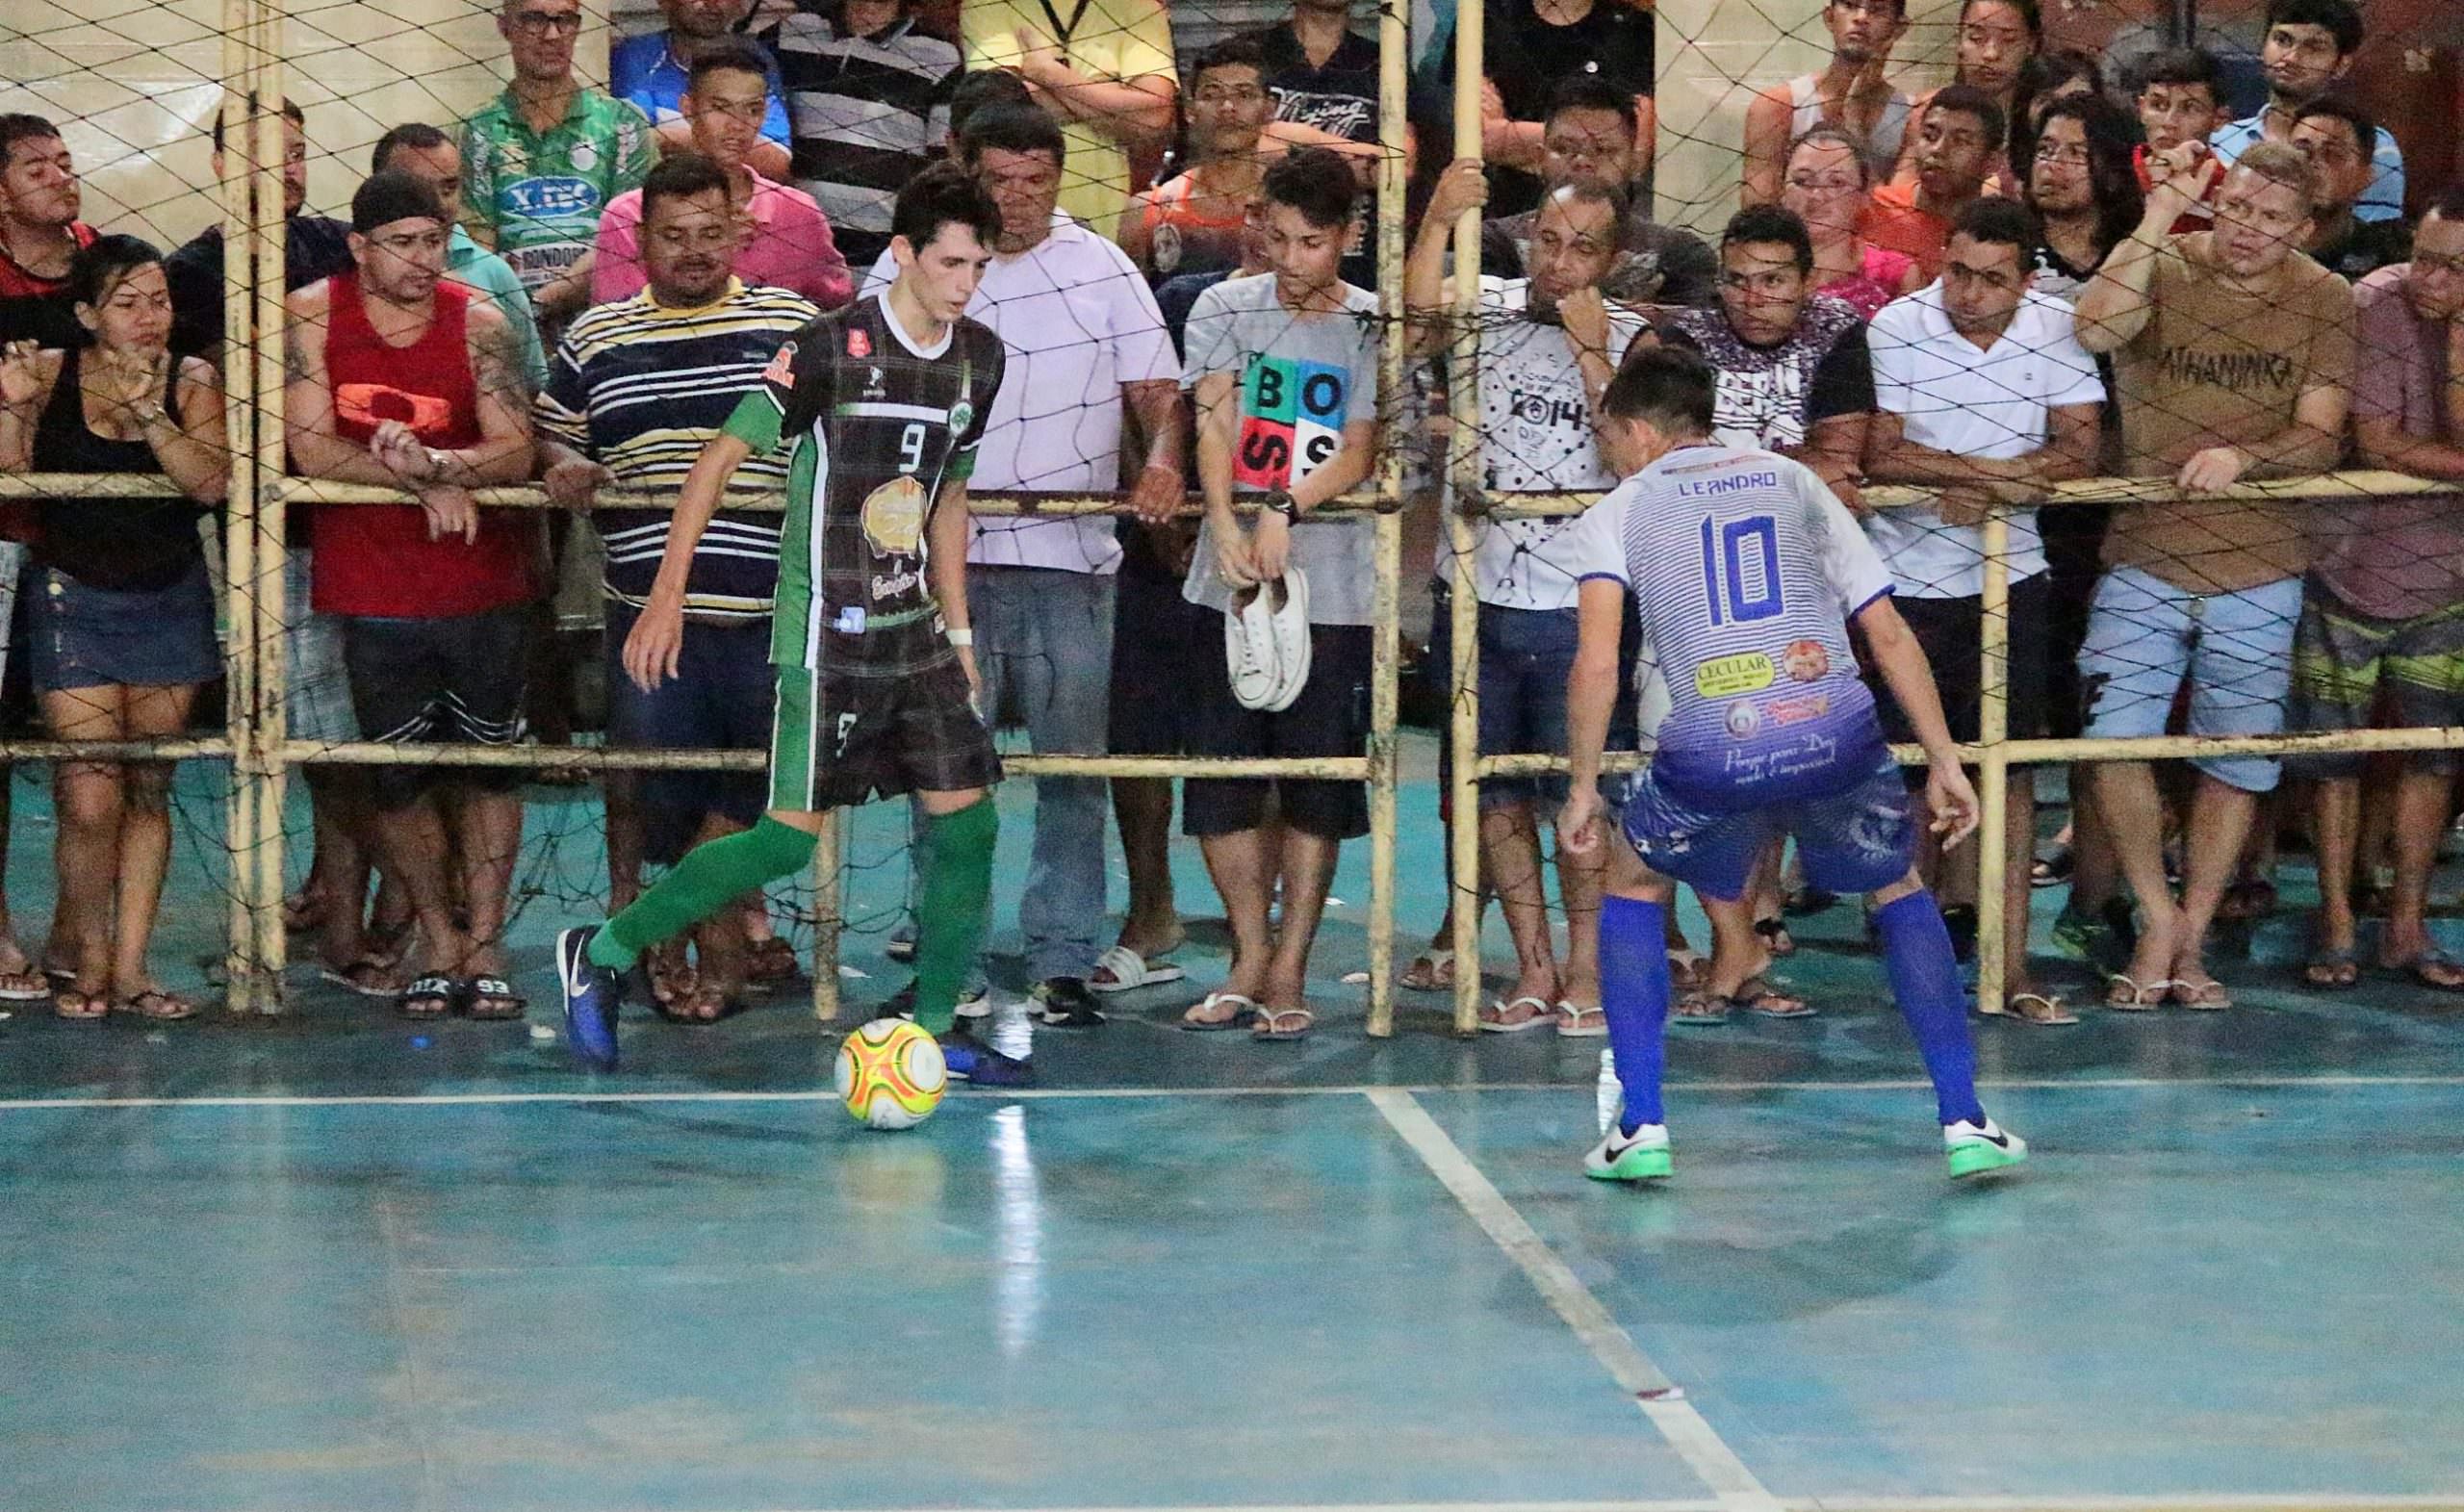 Estrela do Norte e Amigos do Maikon na final da 4ª Copa São Francisco de Futsal